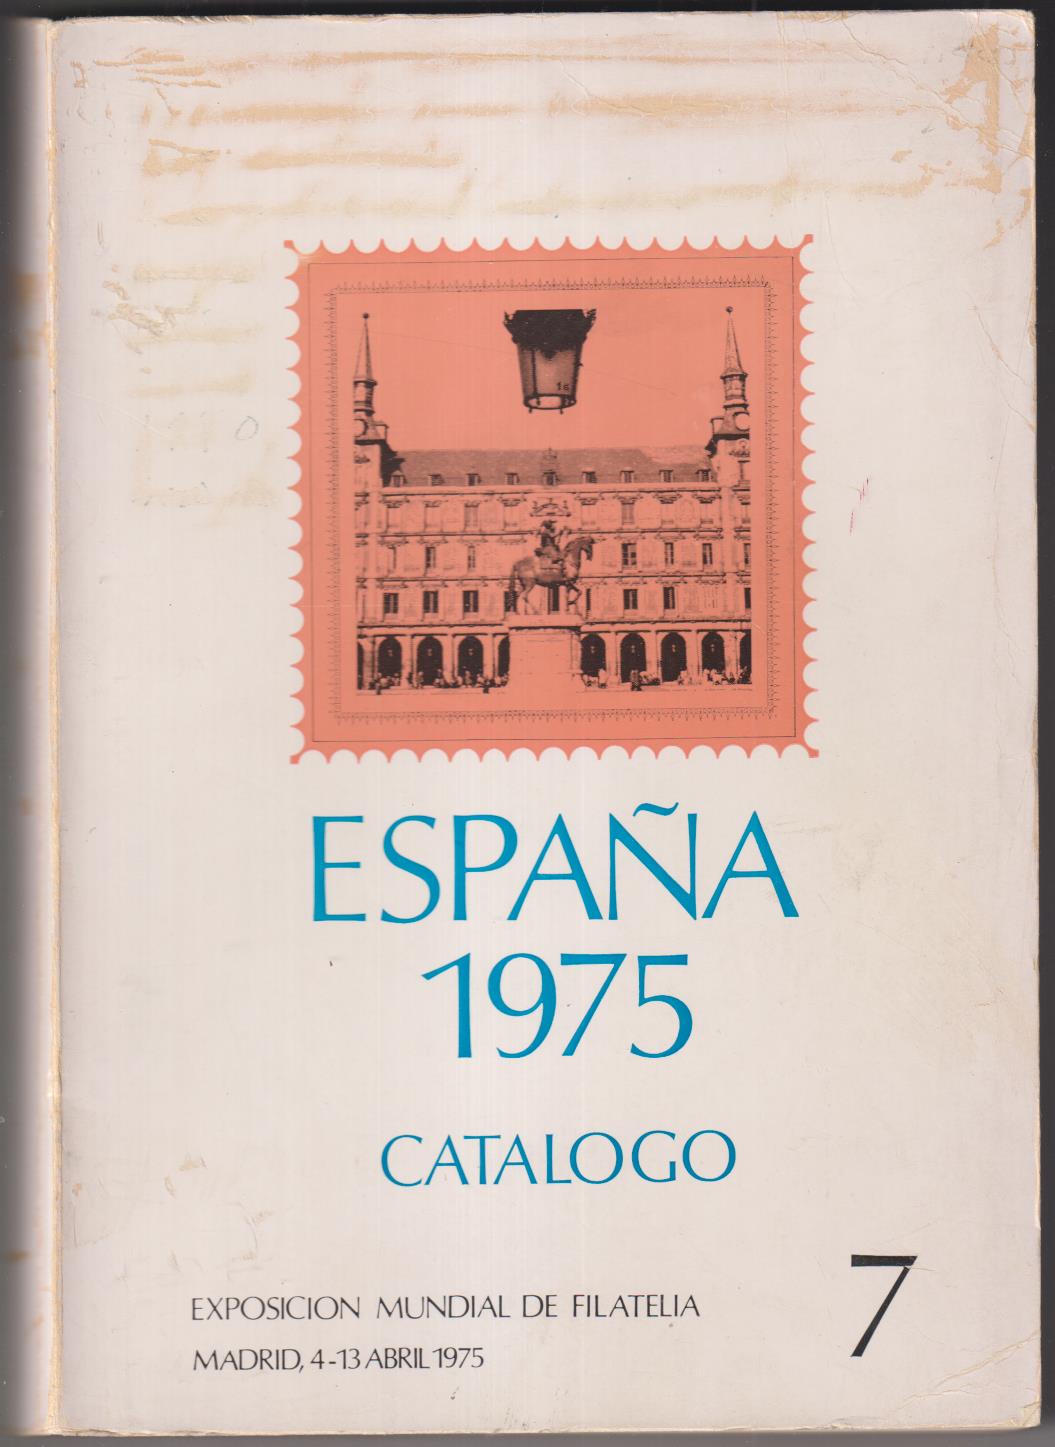 ESpaña 1975 Catálogo. Exposición Mundial de Filatelia. Con pruebas Oficiales 1 y 2  negro